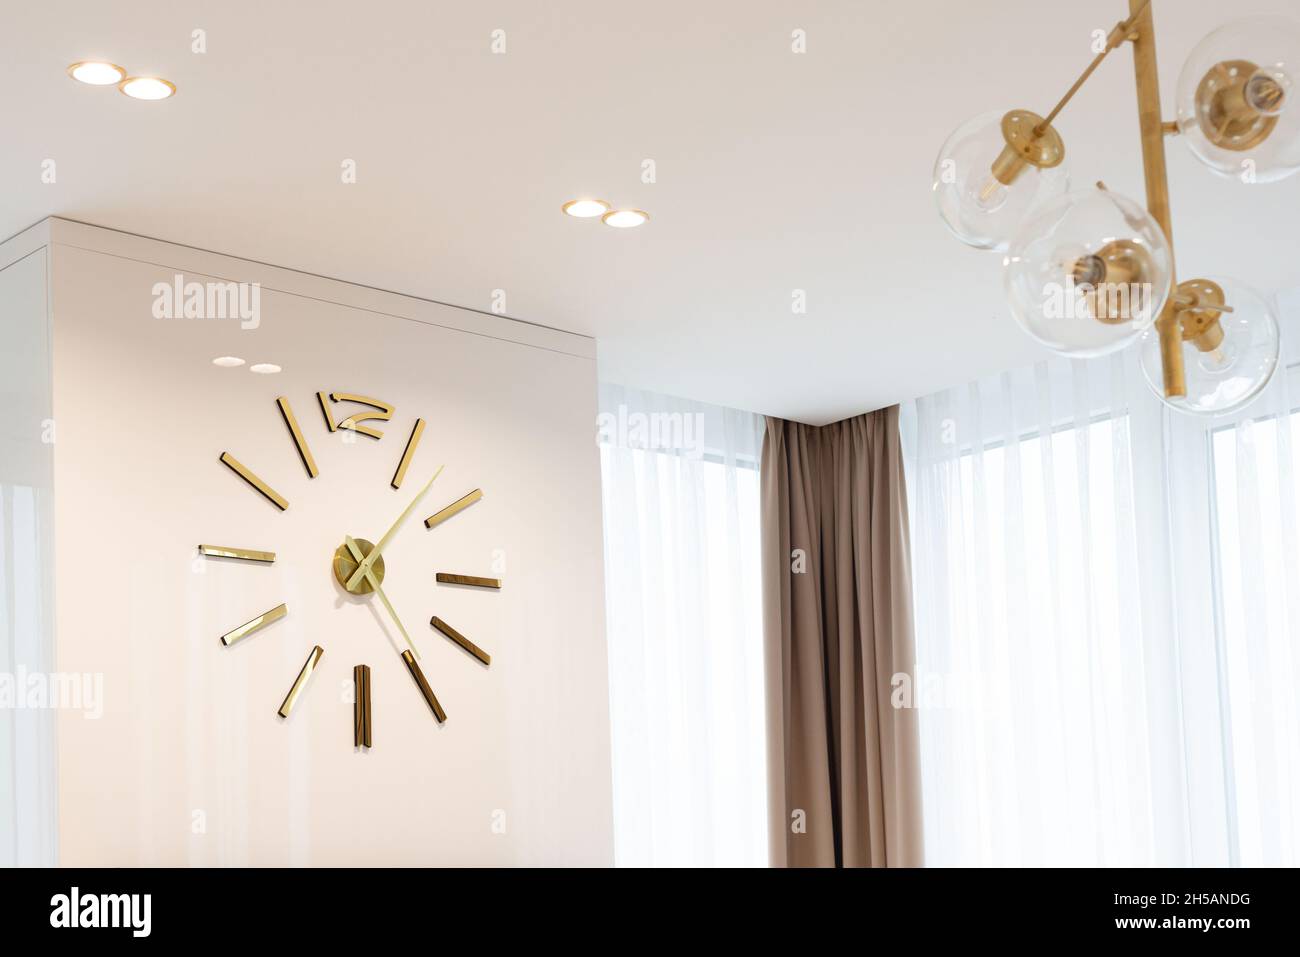 Eine riesige Uhr in Goldfarbe an der Wand in einem modernen beigefarbenen Interieur. Innenarchitektur. Weicher, selektiver Fokus, künstlerisches Rauschen. Stockfoto